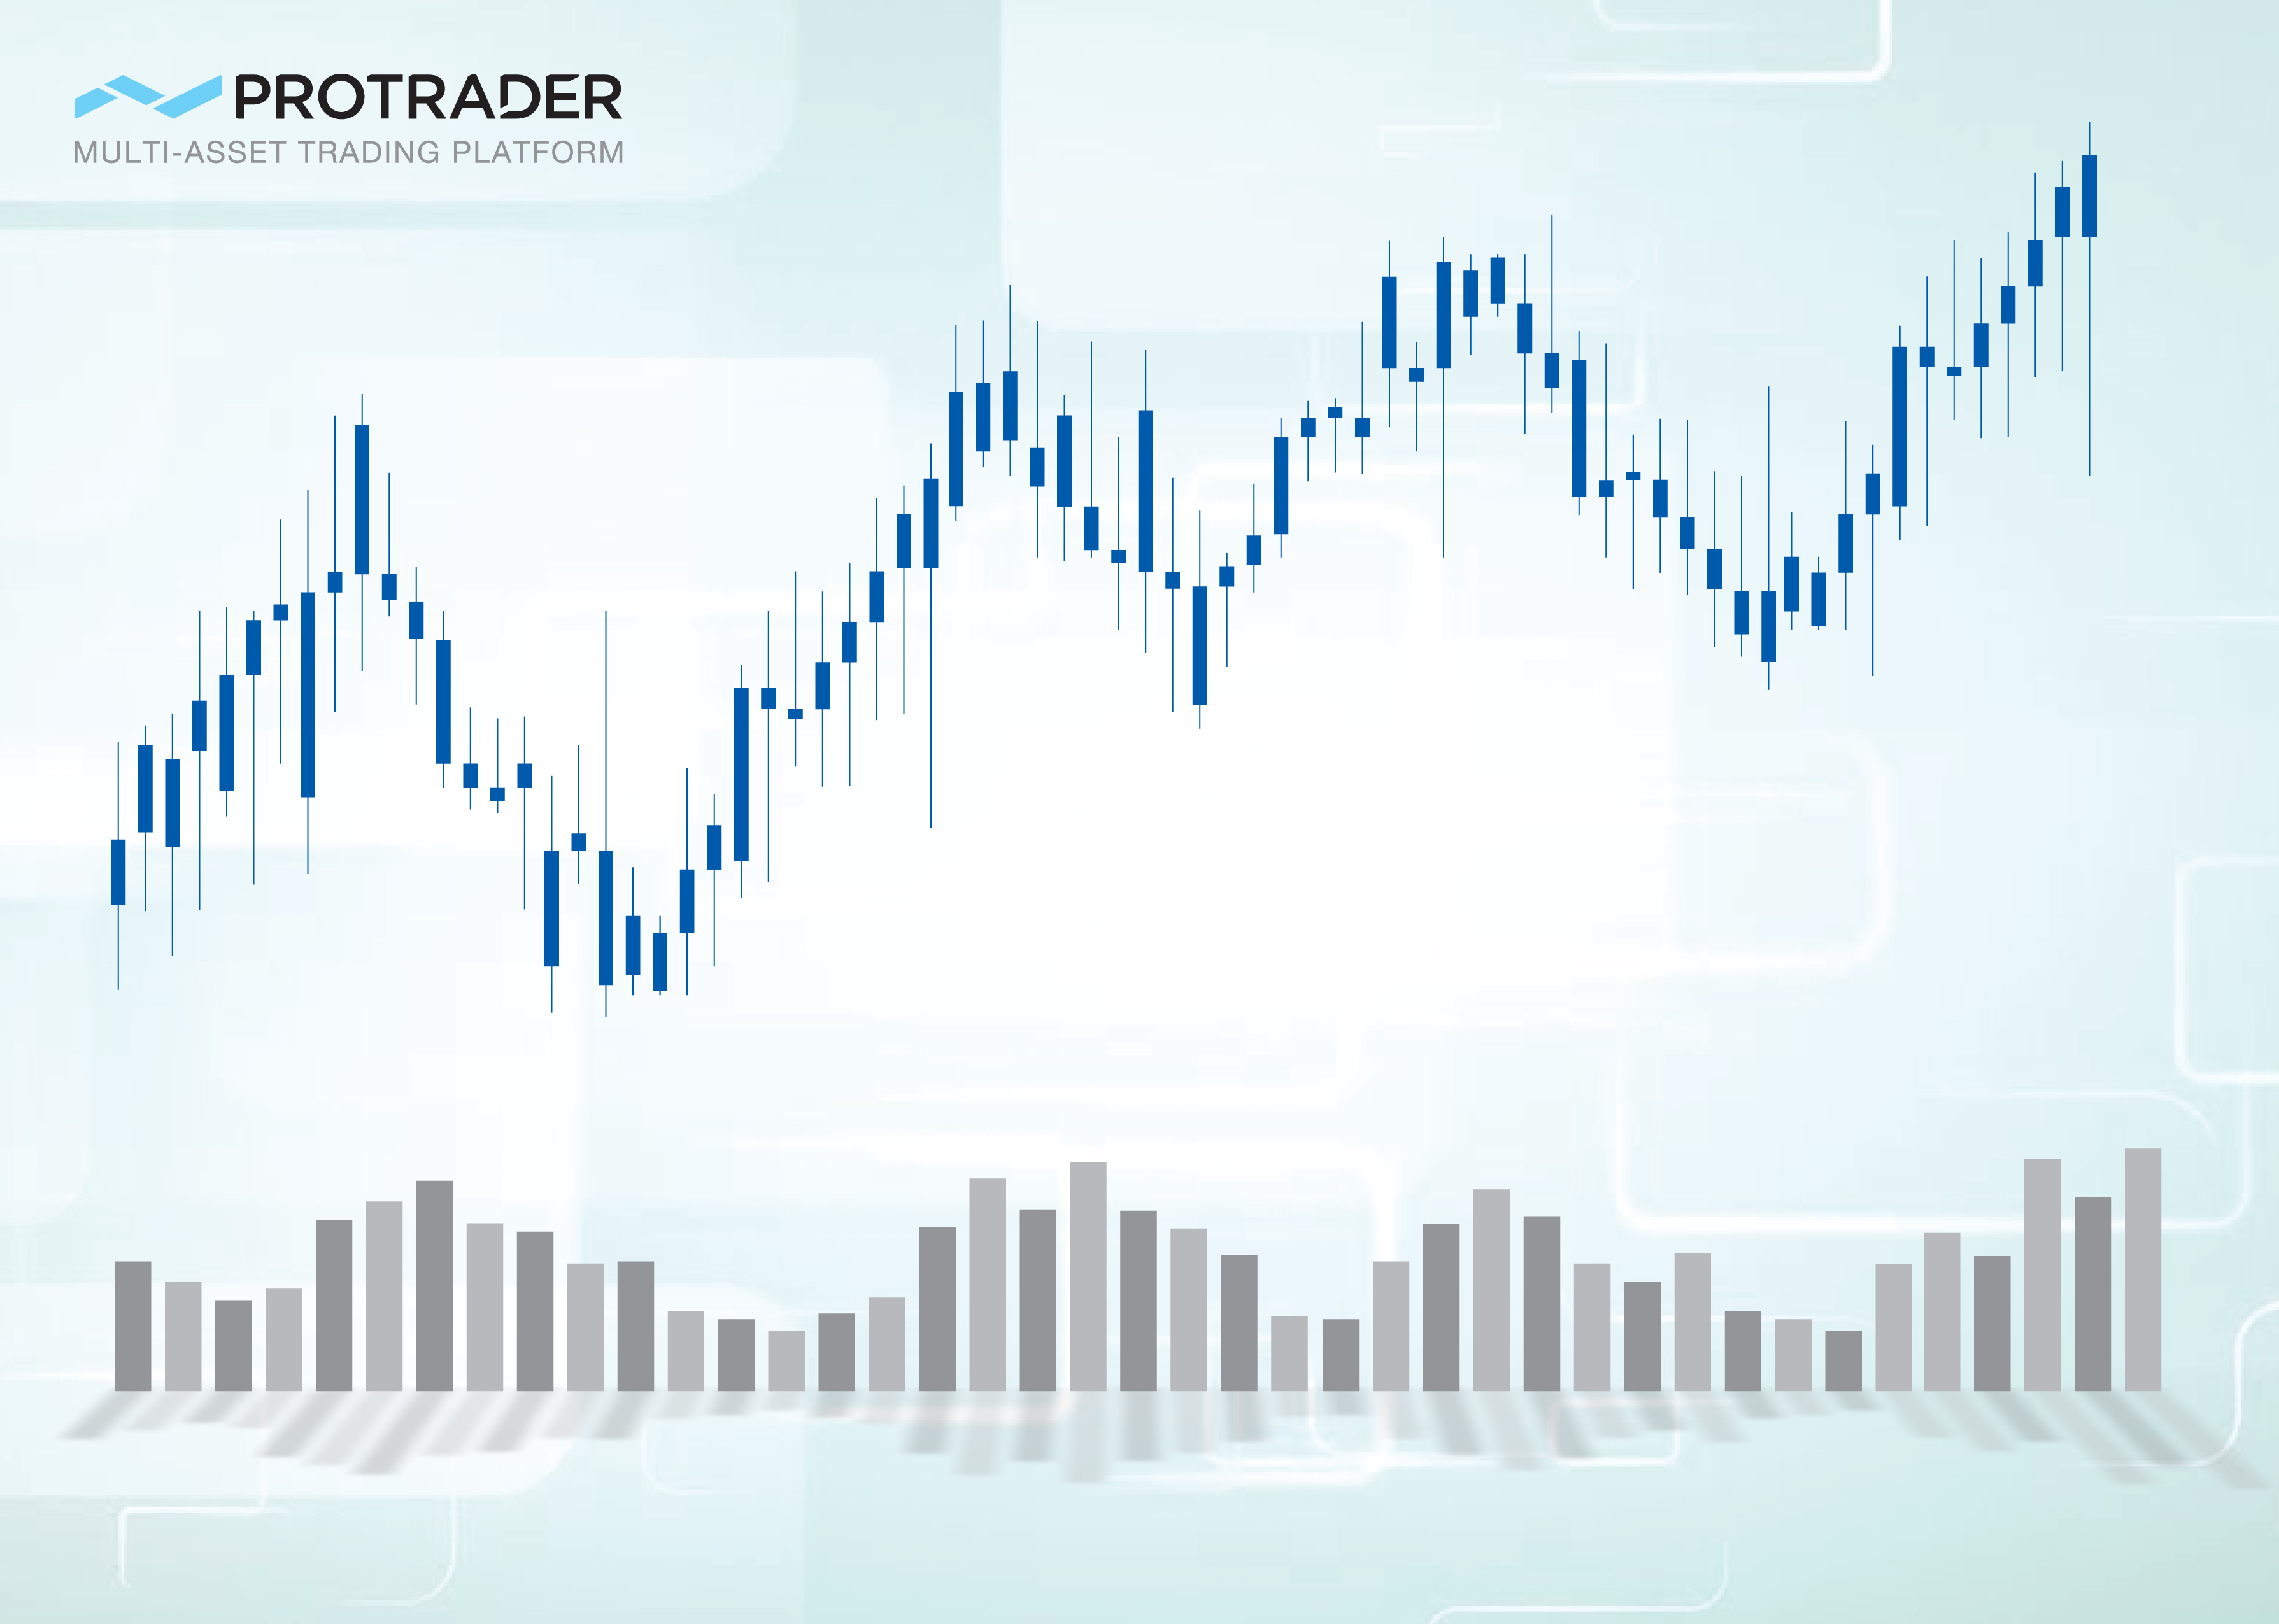 trading volume in Protrader